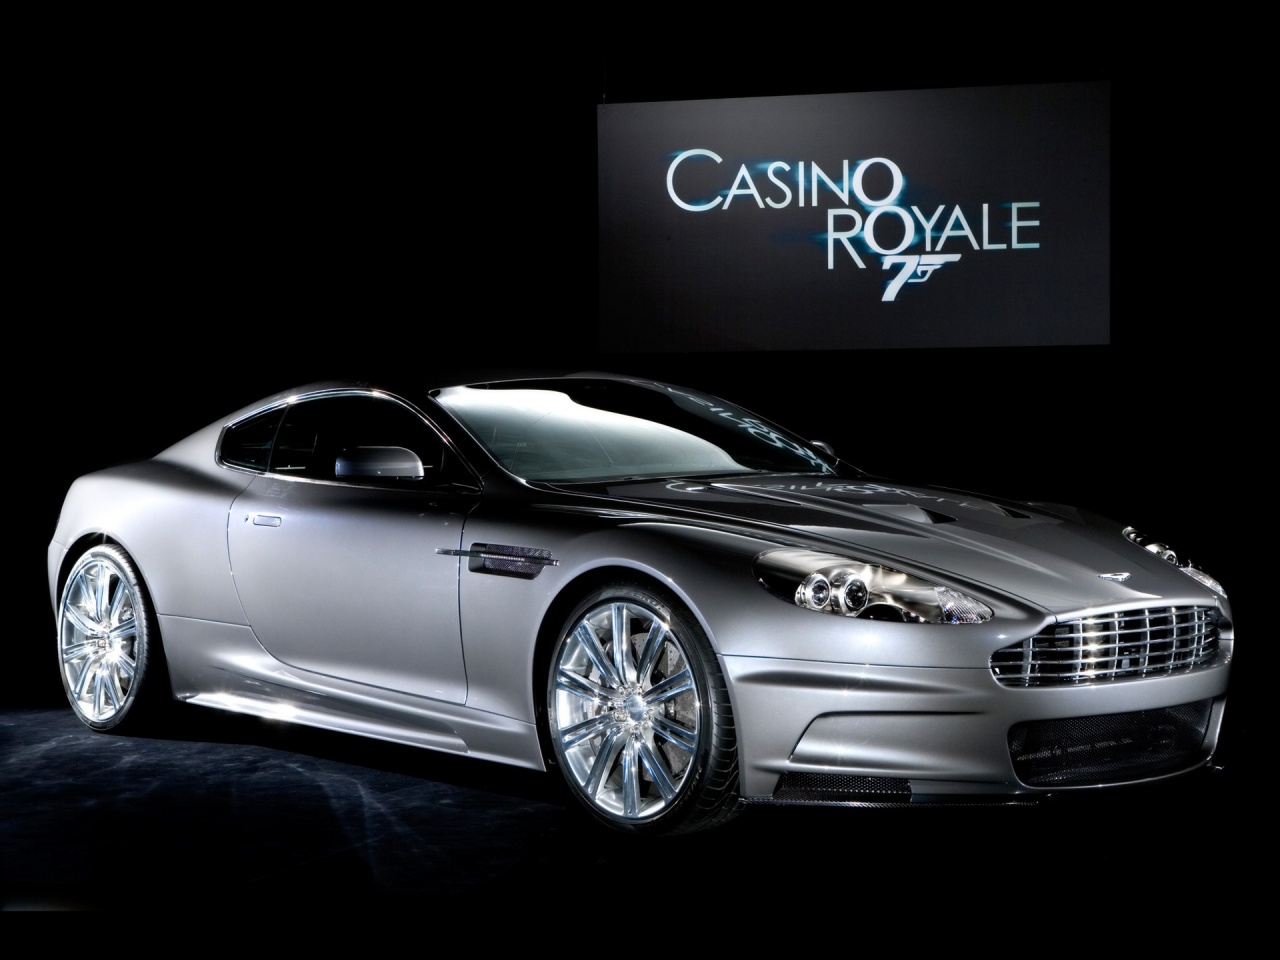 Casino Royale Car Wallpaper Stock Photos